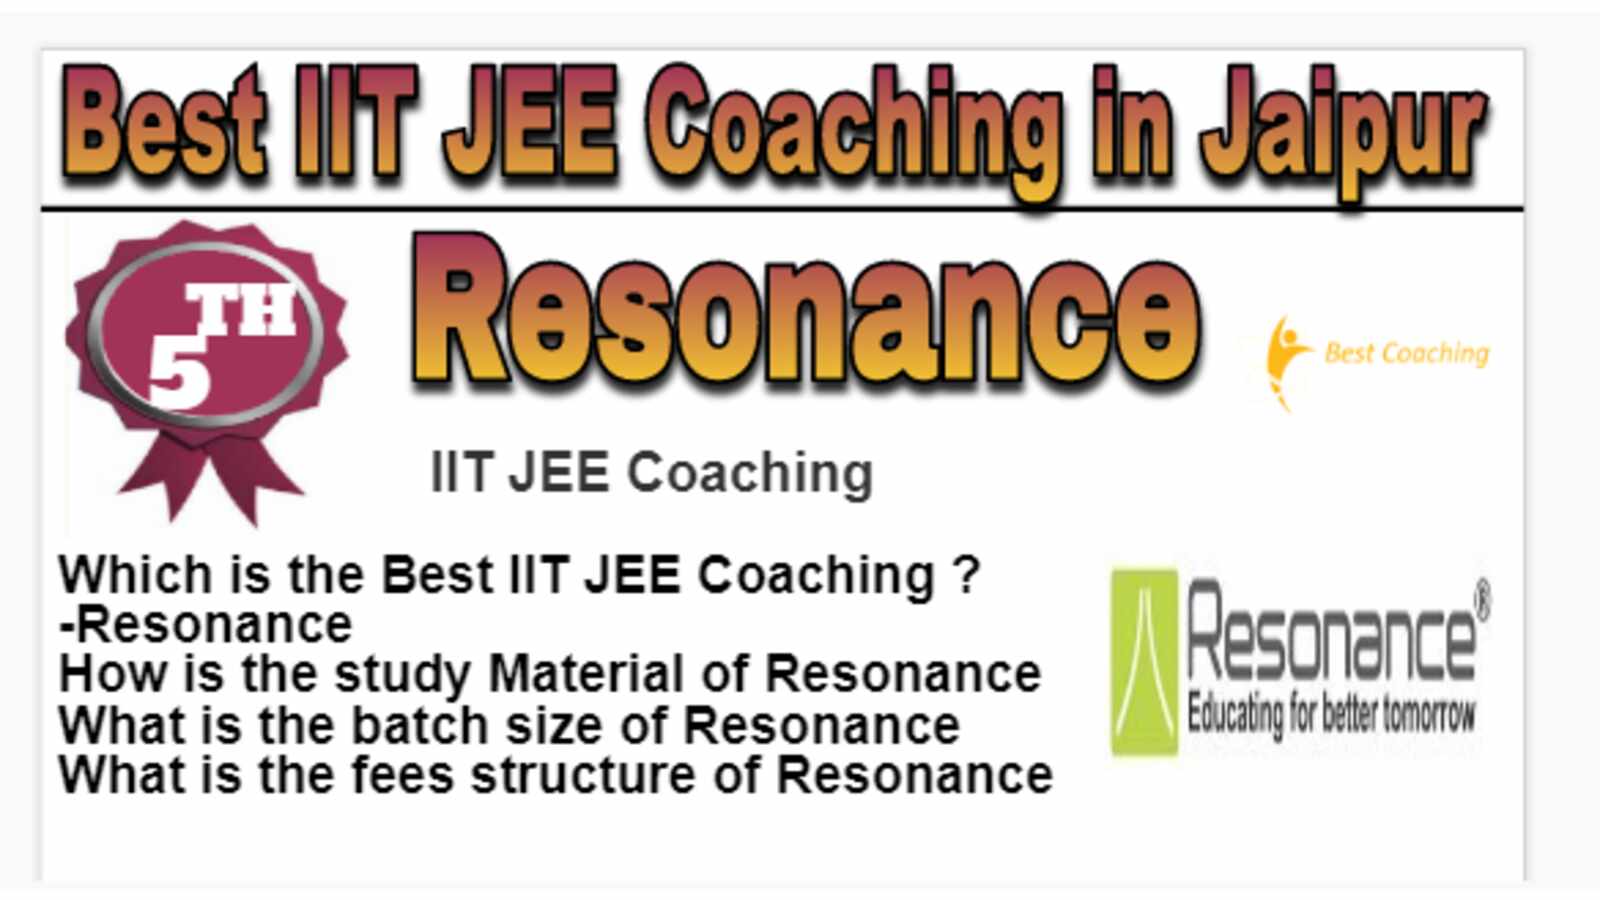 Rank 5 Best IIT JEE Coaching in Jaipur